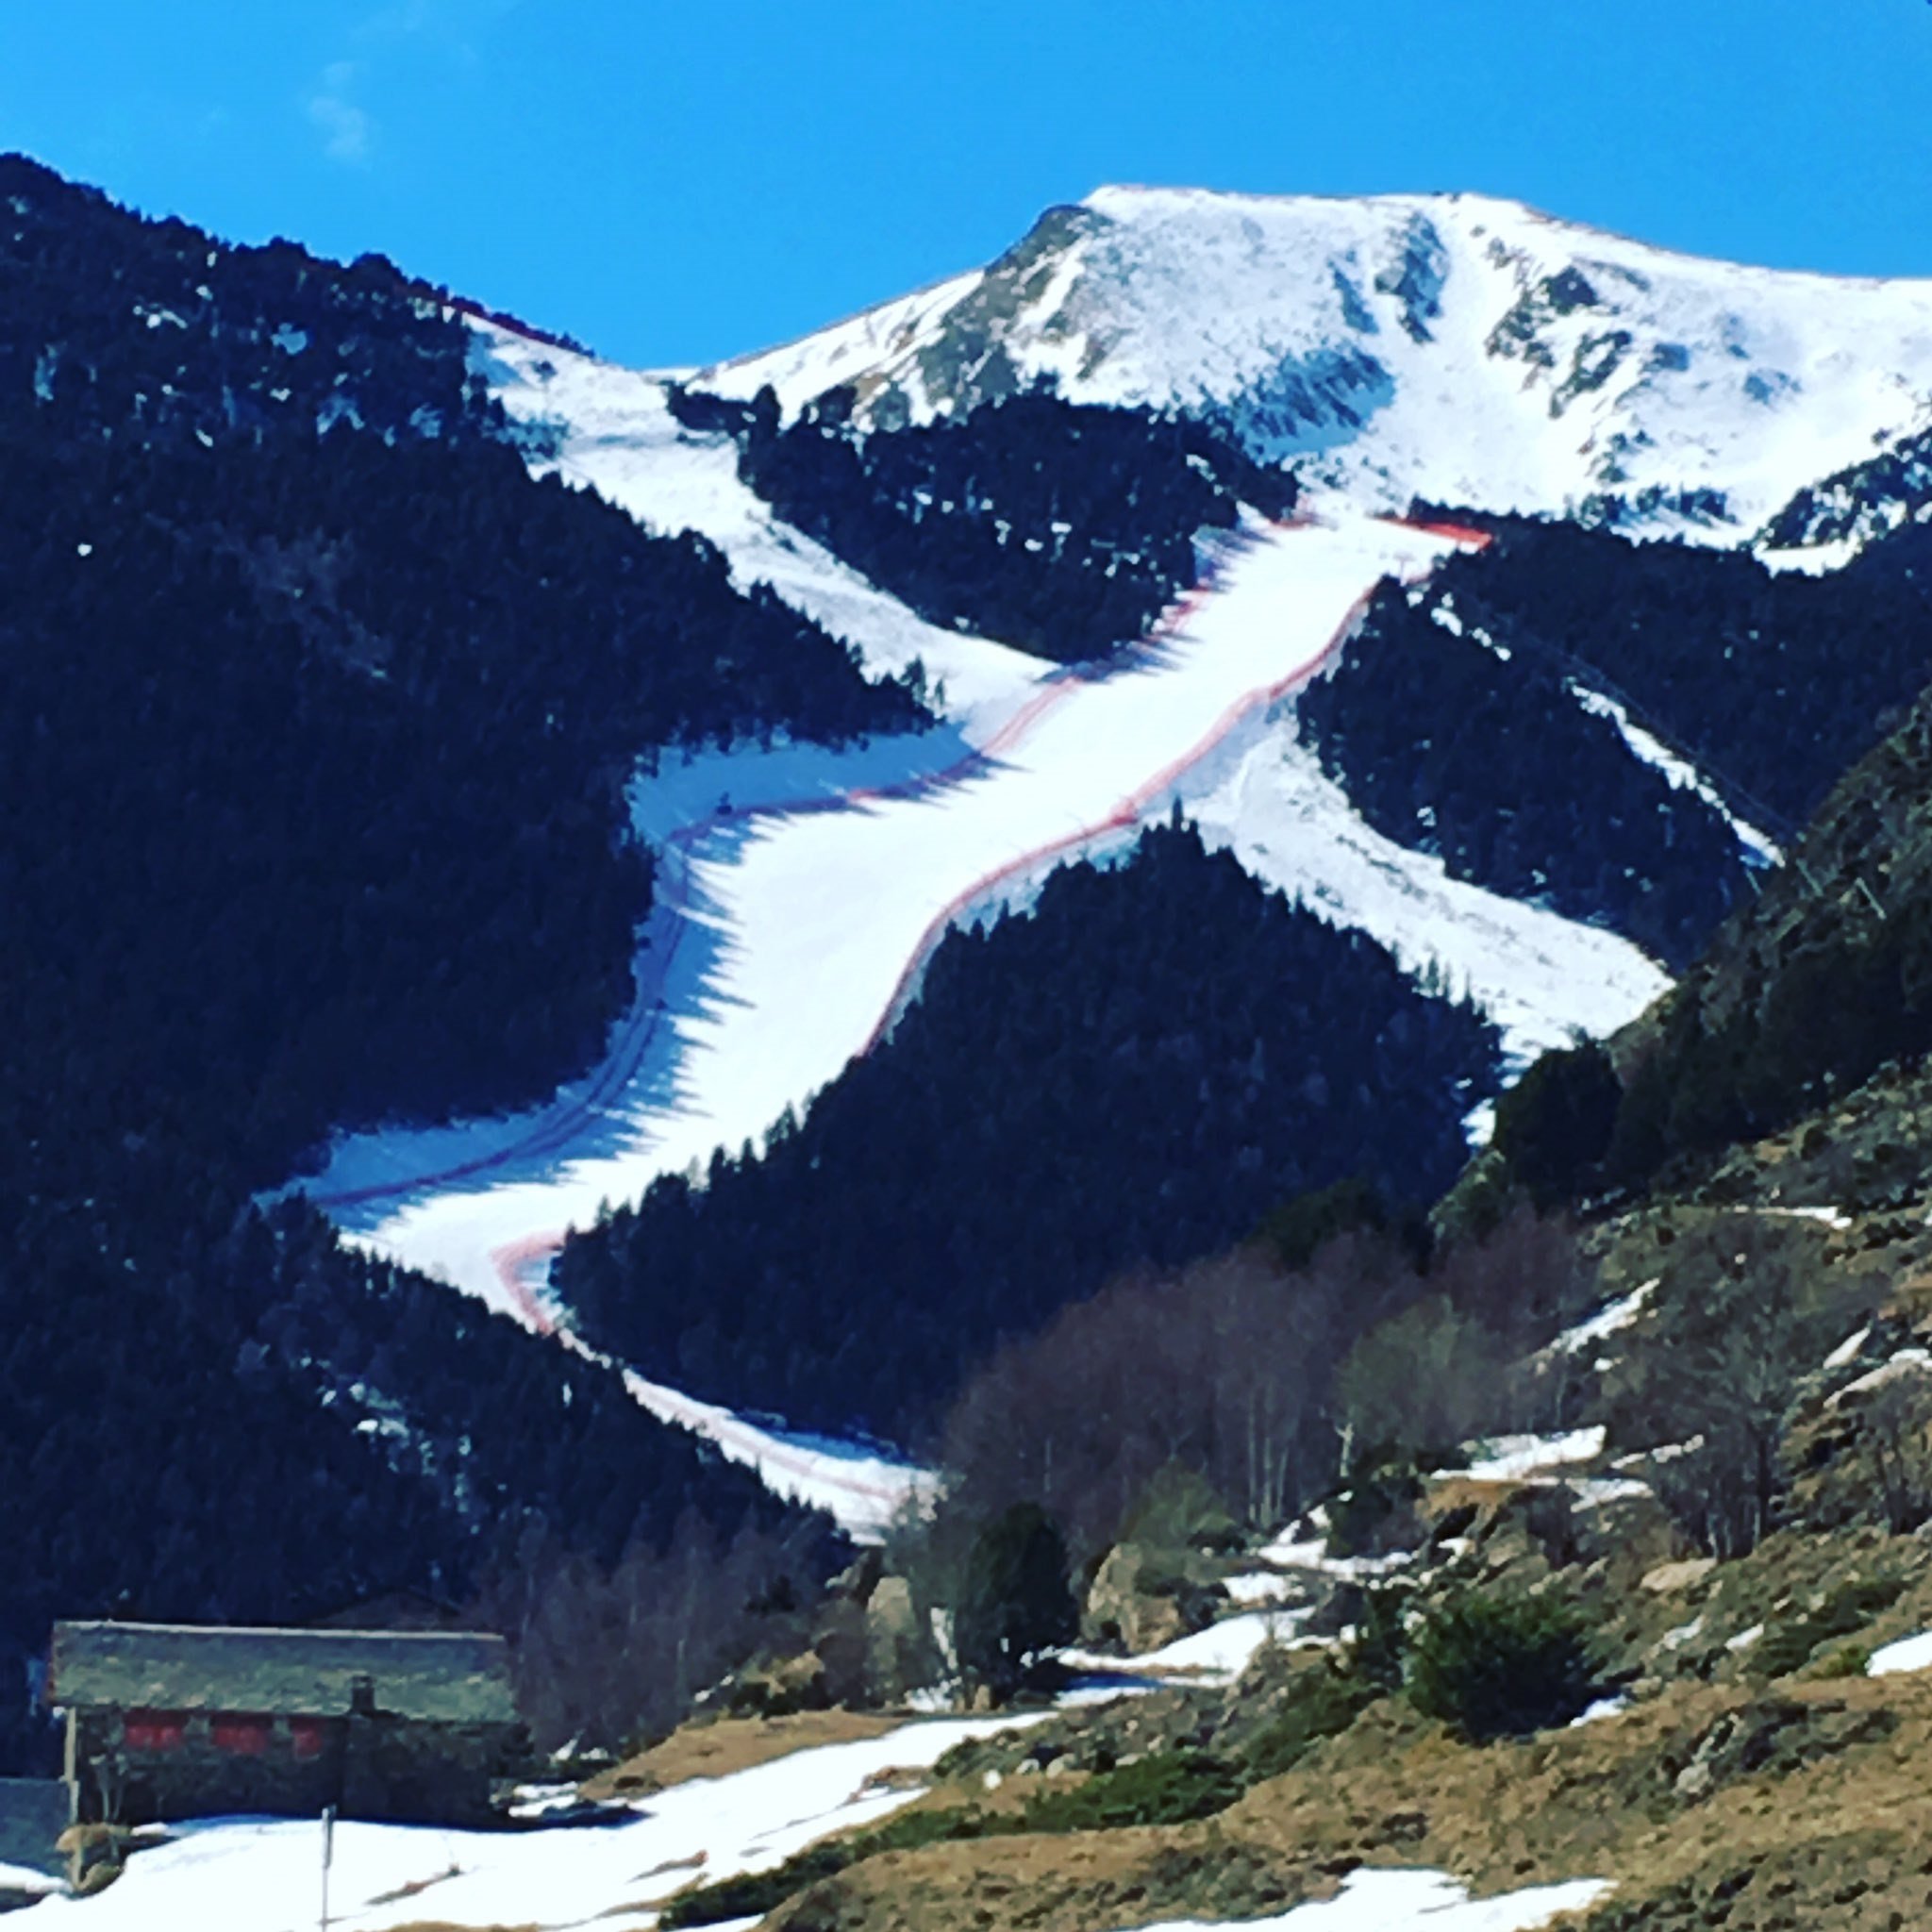 Andorra no demanarà el passaport Covid per esquiar a les seves estacions